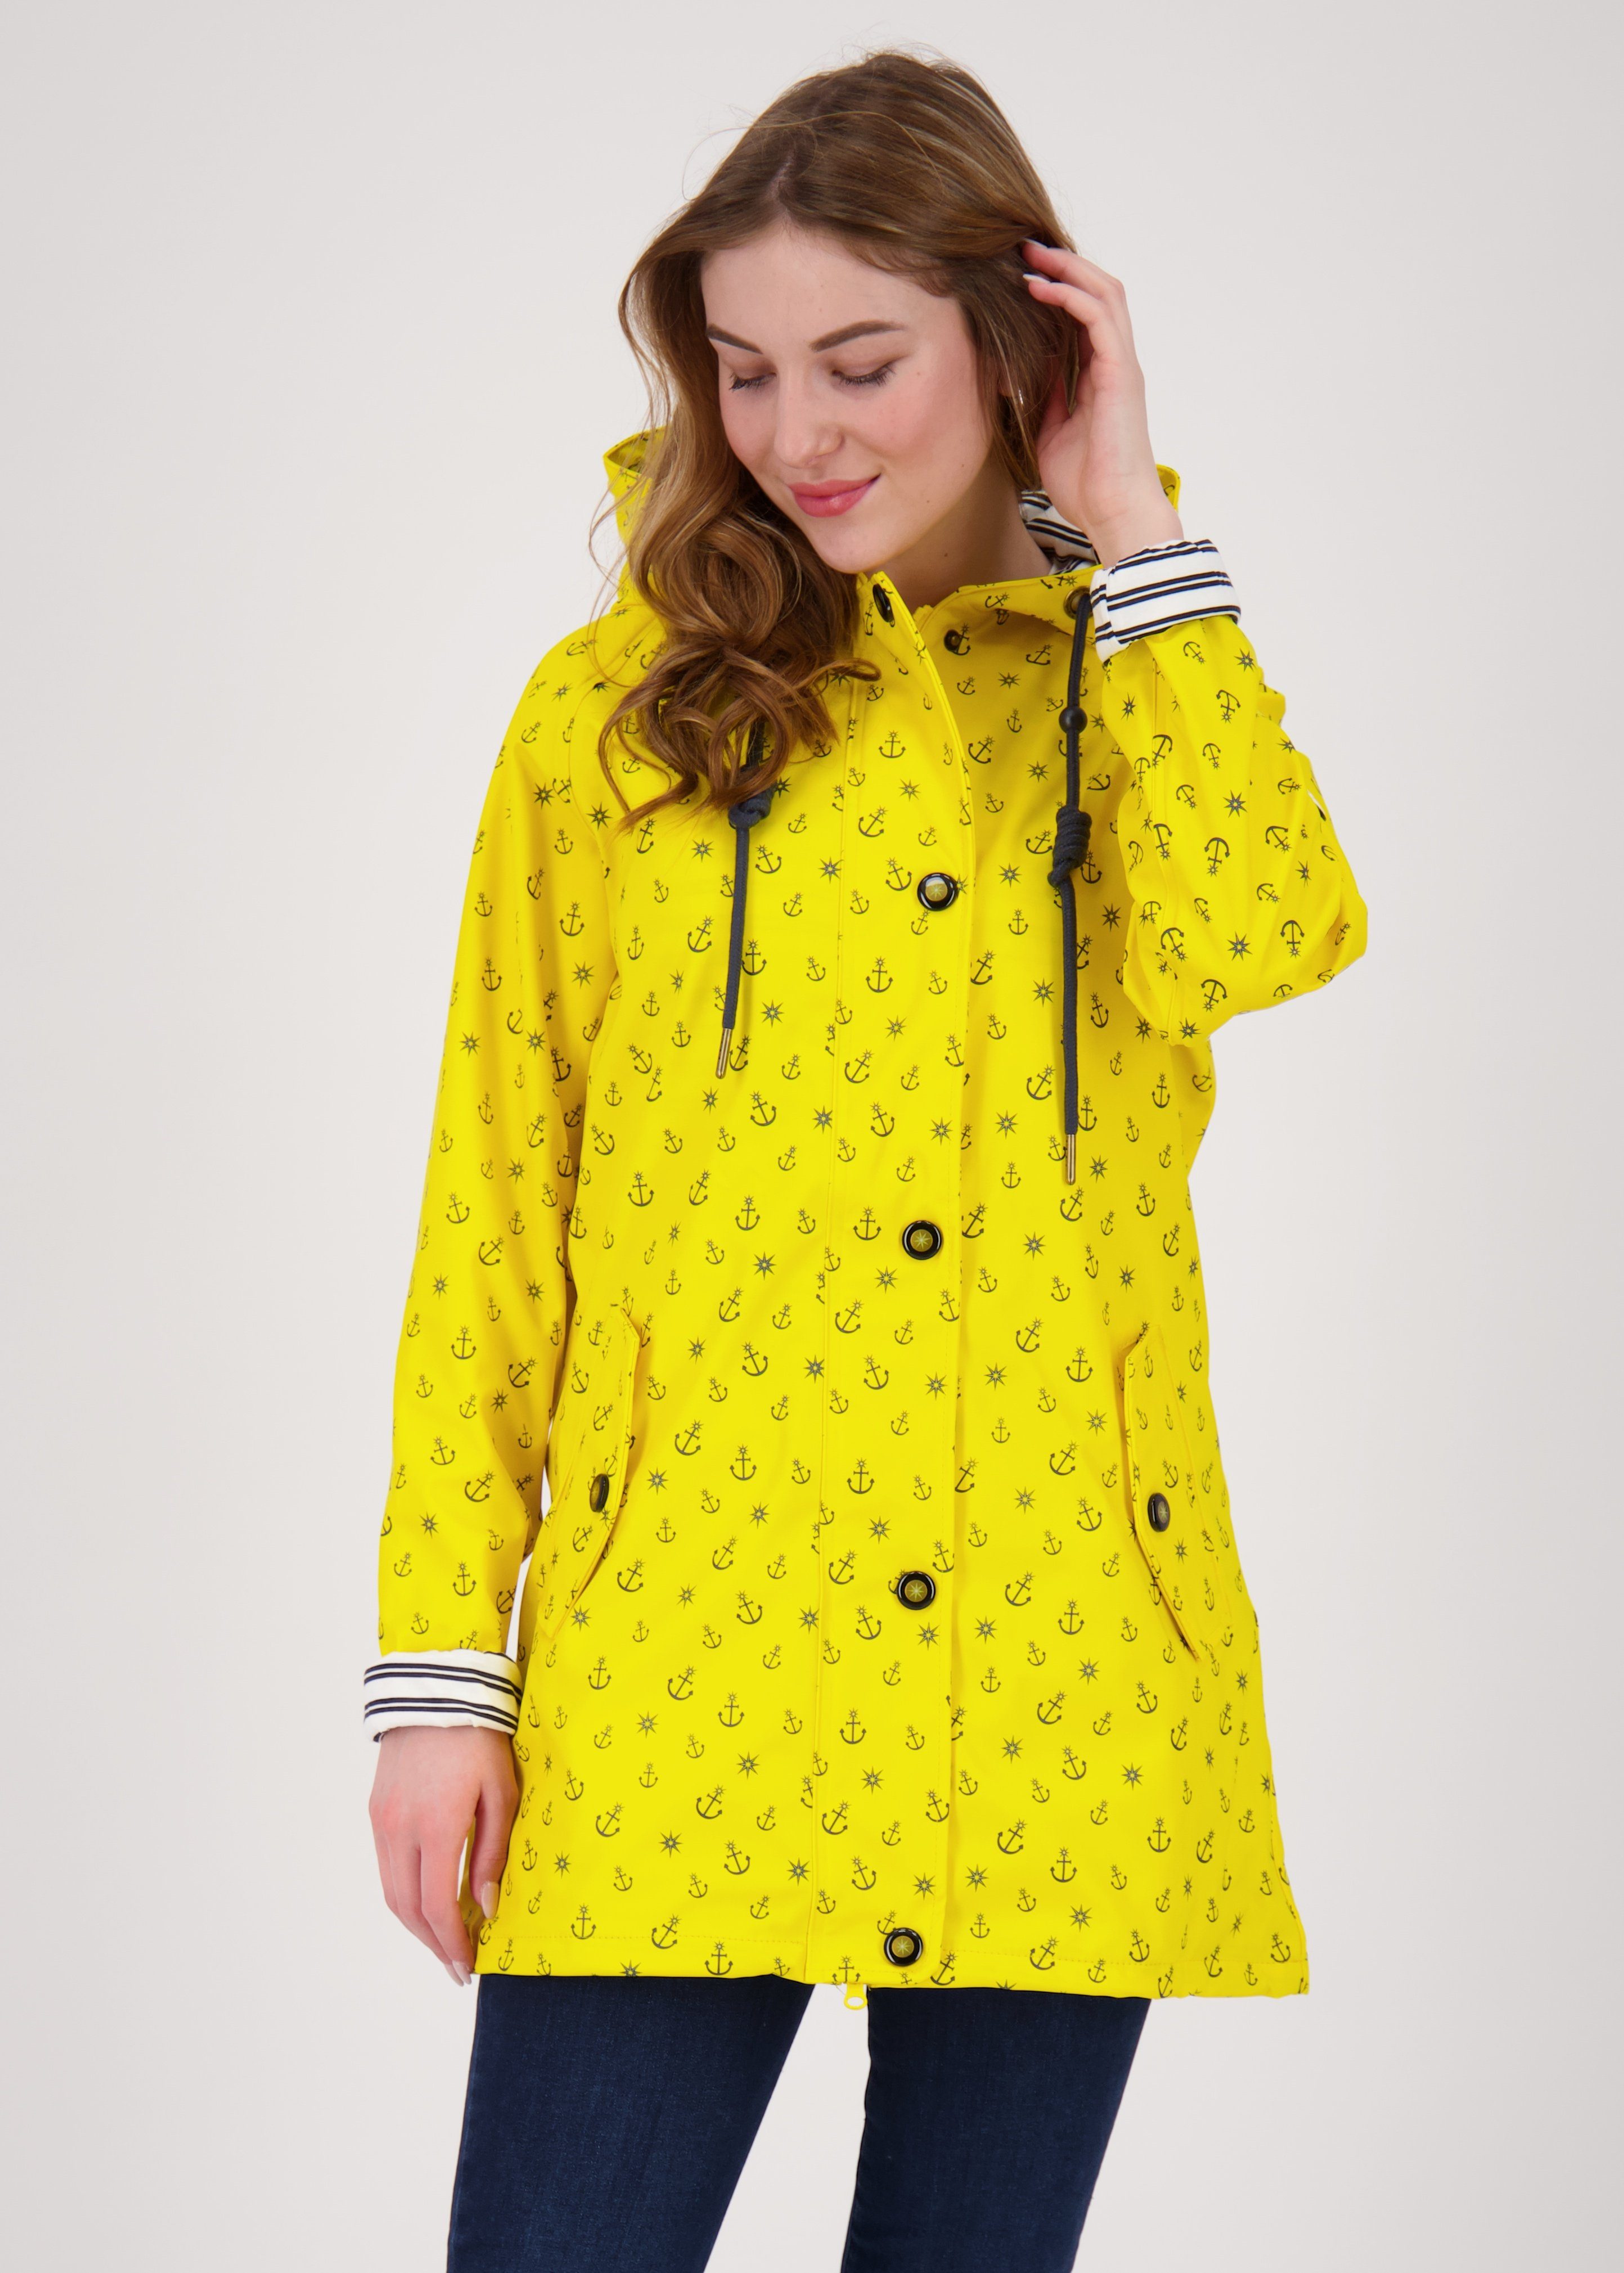 Friesennerz WOMEN auch #ankerglutzauber Größen DEPROC Active in erhältlich CS yellow Großen Regenjacke